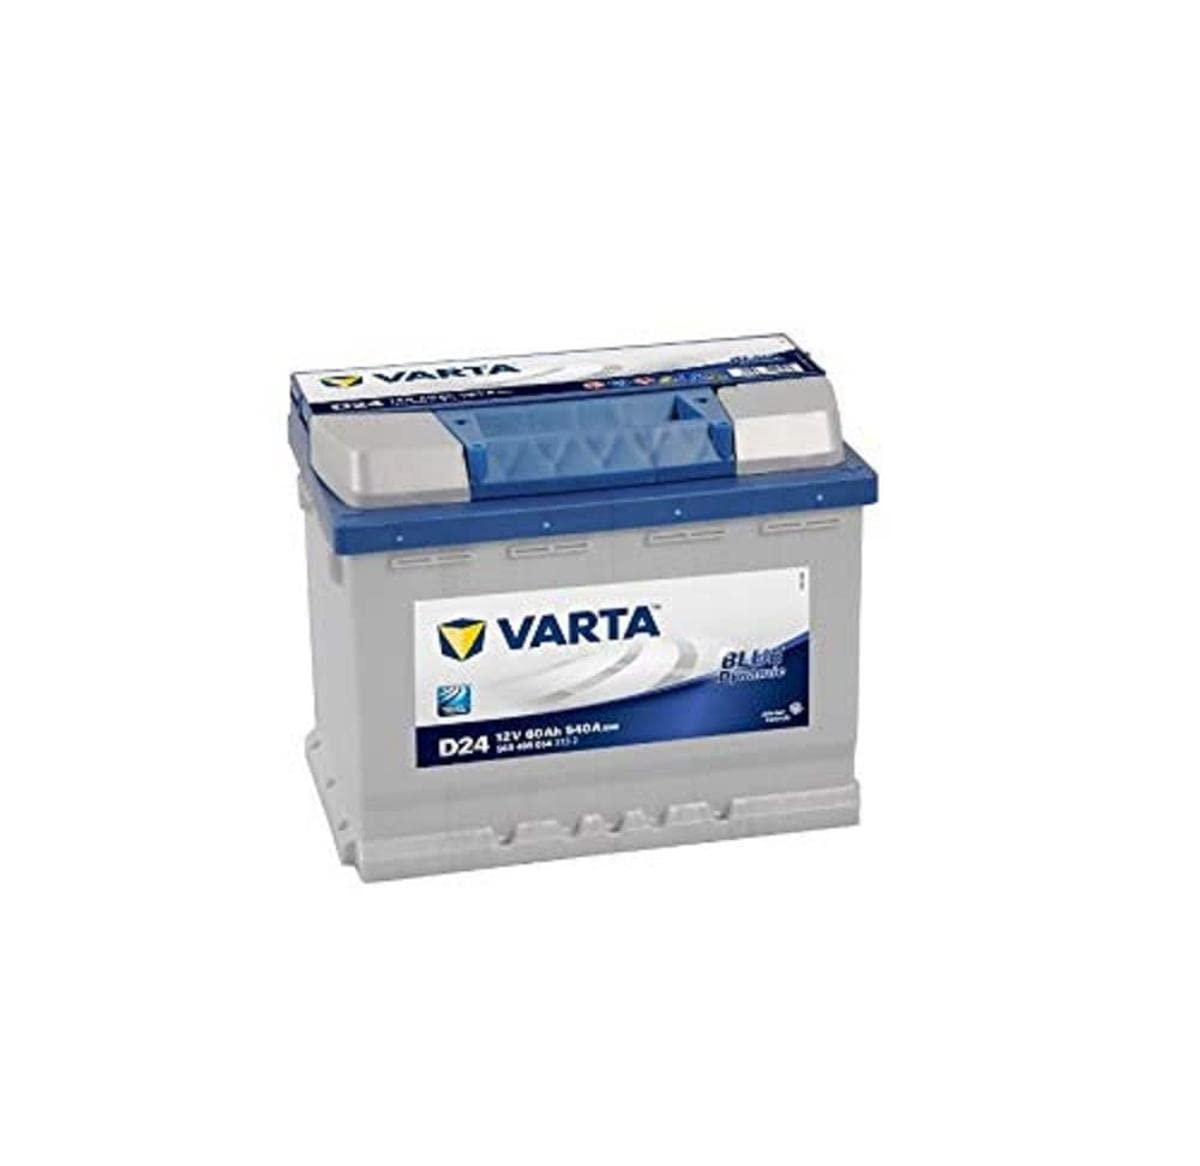 Varta D24 Blue Dynamic Starterbatterie 5604080543132 12V 60Ah 540A von Varta